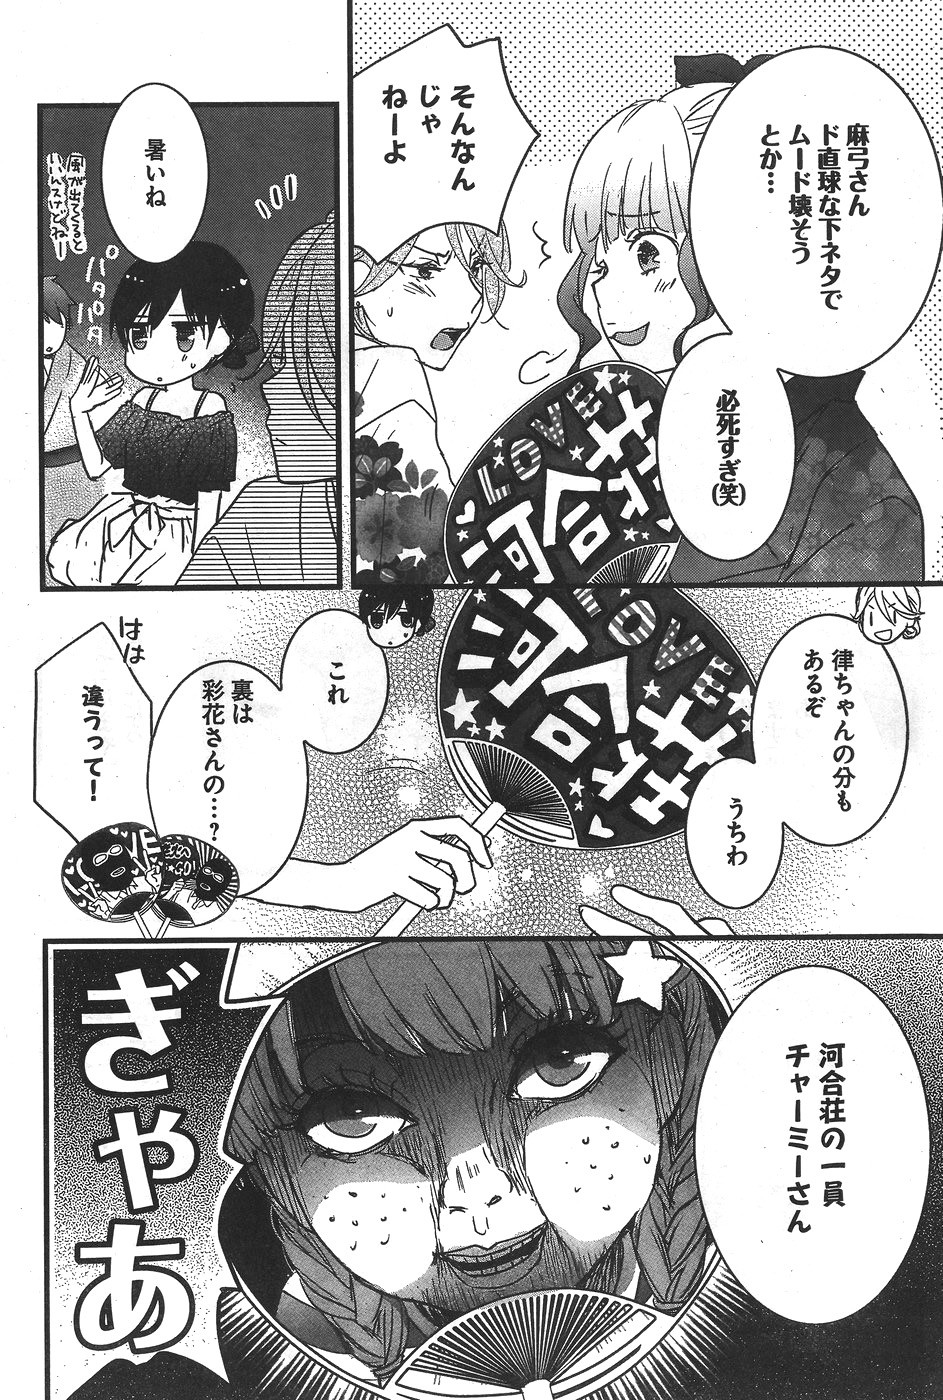 Bokura wa Minna Kawaisou - Chapter 74 - Page 4